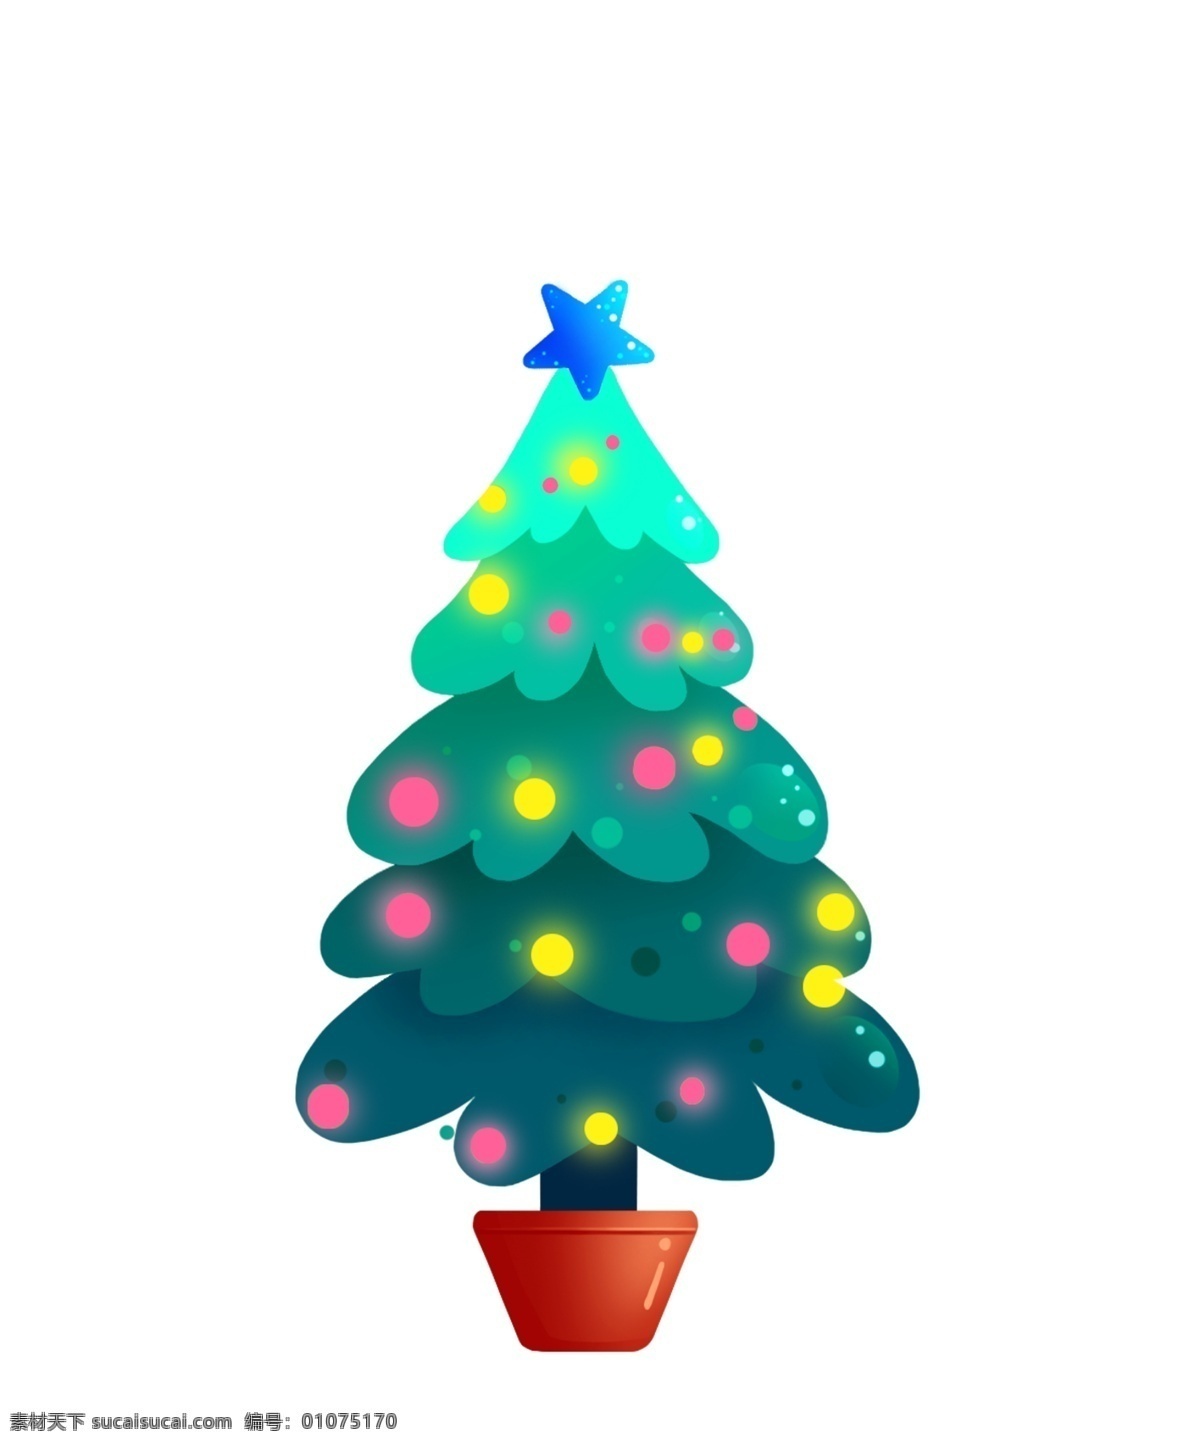 卡通 手绘 圣诞树 圣诞节 装饰 卡通树 平安夜 礼物 糖果 彩灯 可爱 树 手绘树 节日